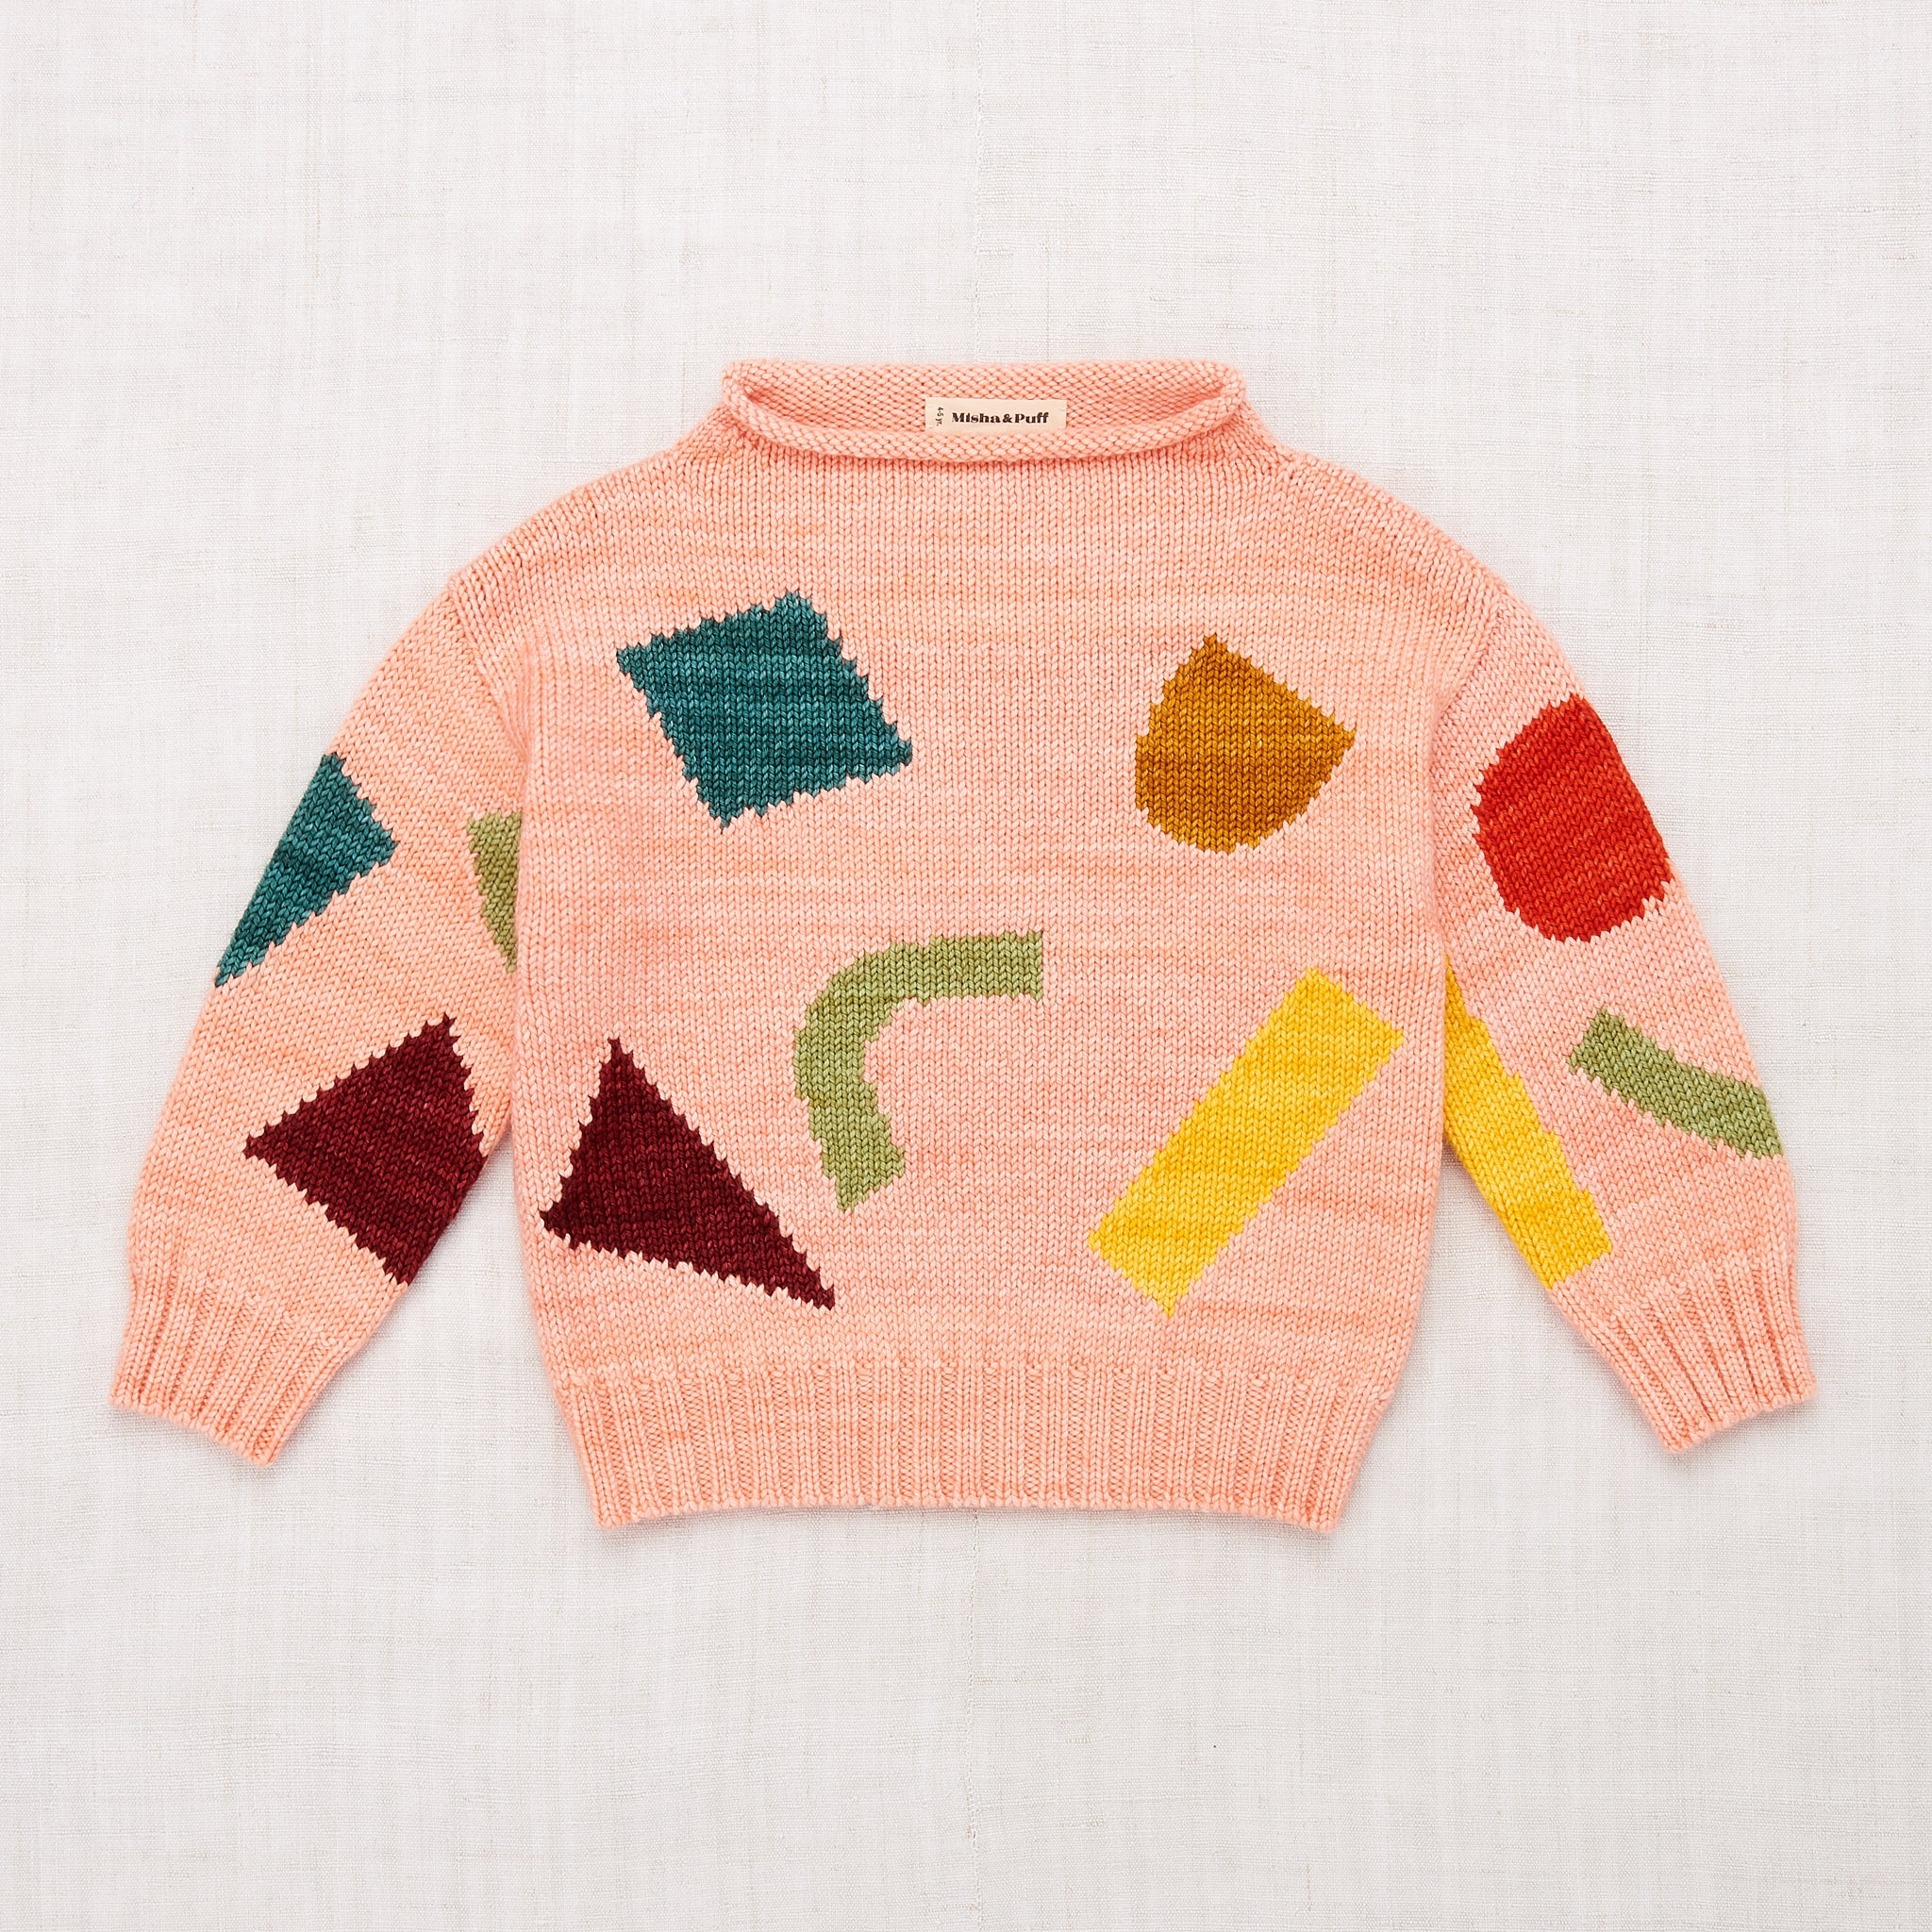 販サイトMisha&Puff☆square intarsia sweater☆2-3y ニット